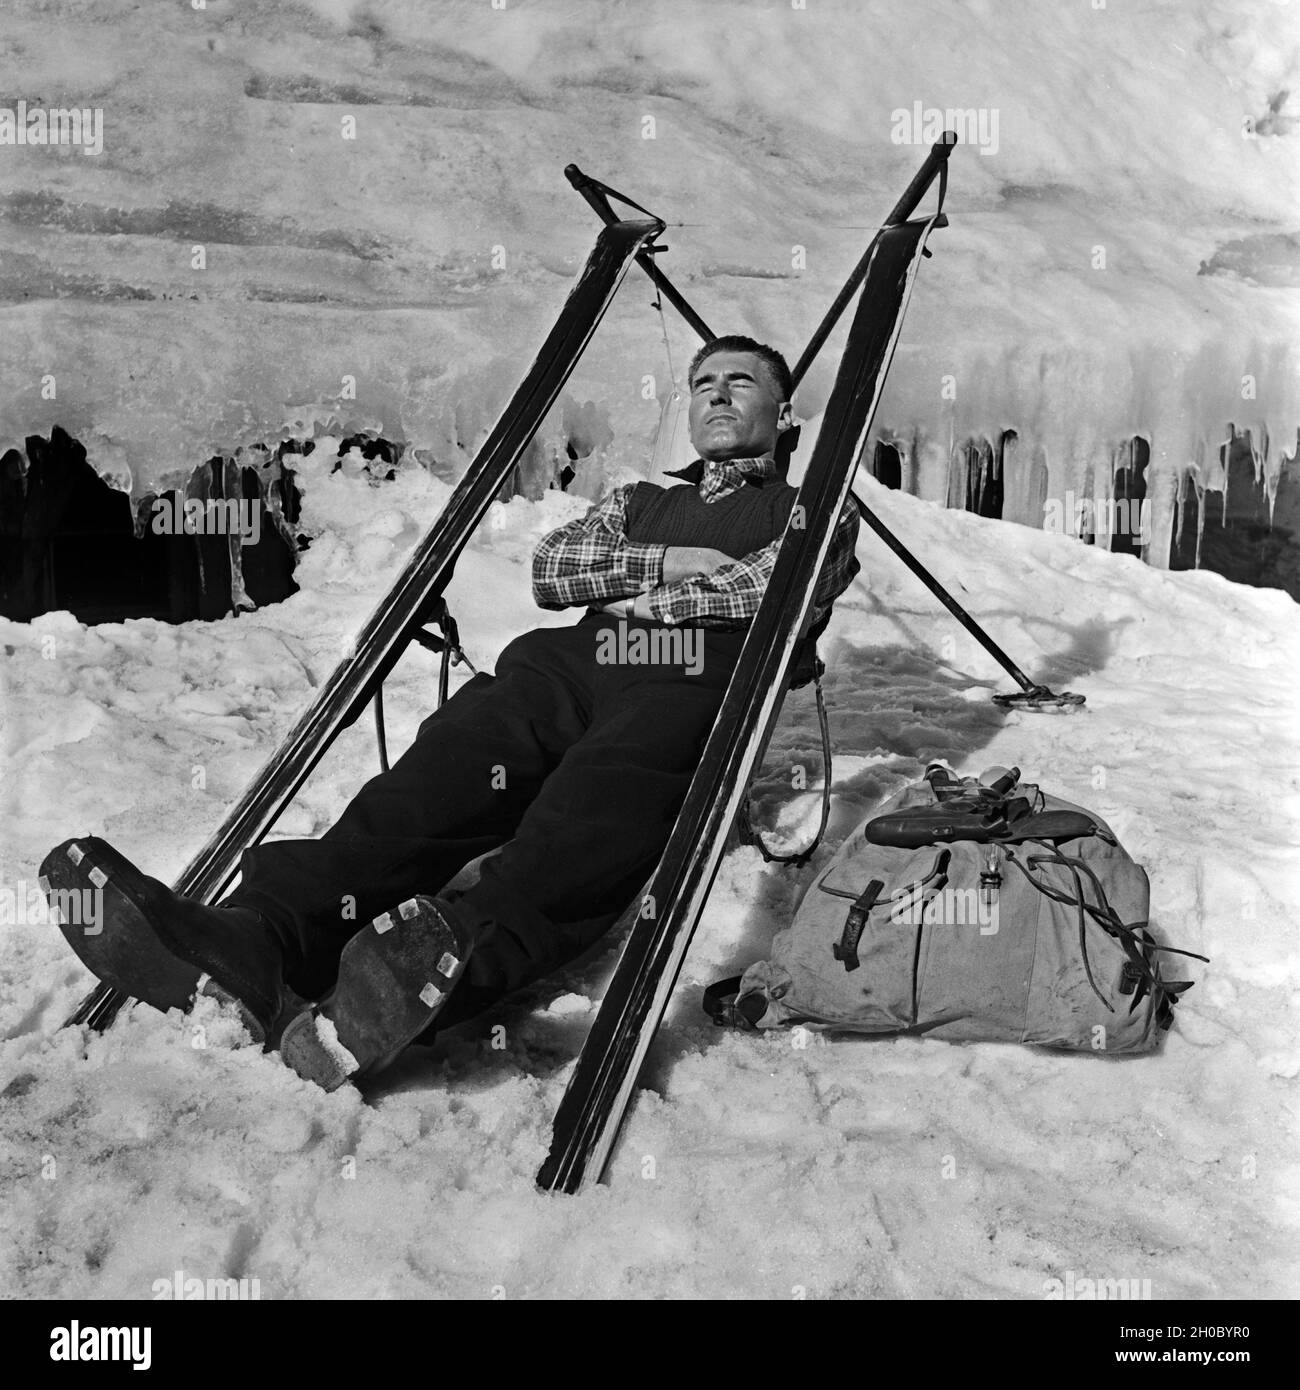 Ein Skiurlauber hat sich aus-Skifahrer einen Sitz gebaut und macht eine Pause, Deutschland 1930er Jahre. Ein Ski touristische erbaut, der Sitz von seinen Skiern und haben jetzt eine Pause, Deutschland 1930. Stockfoto